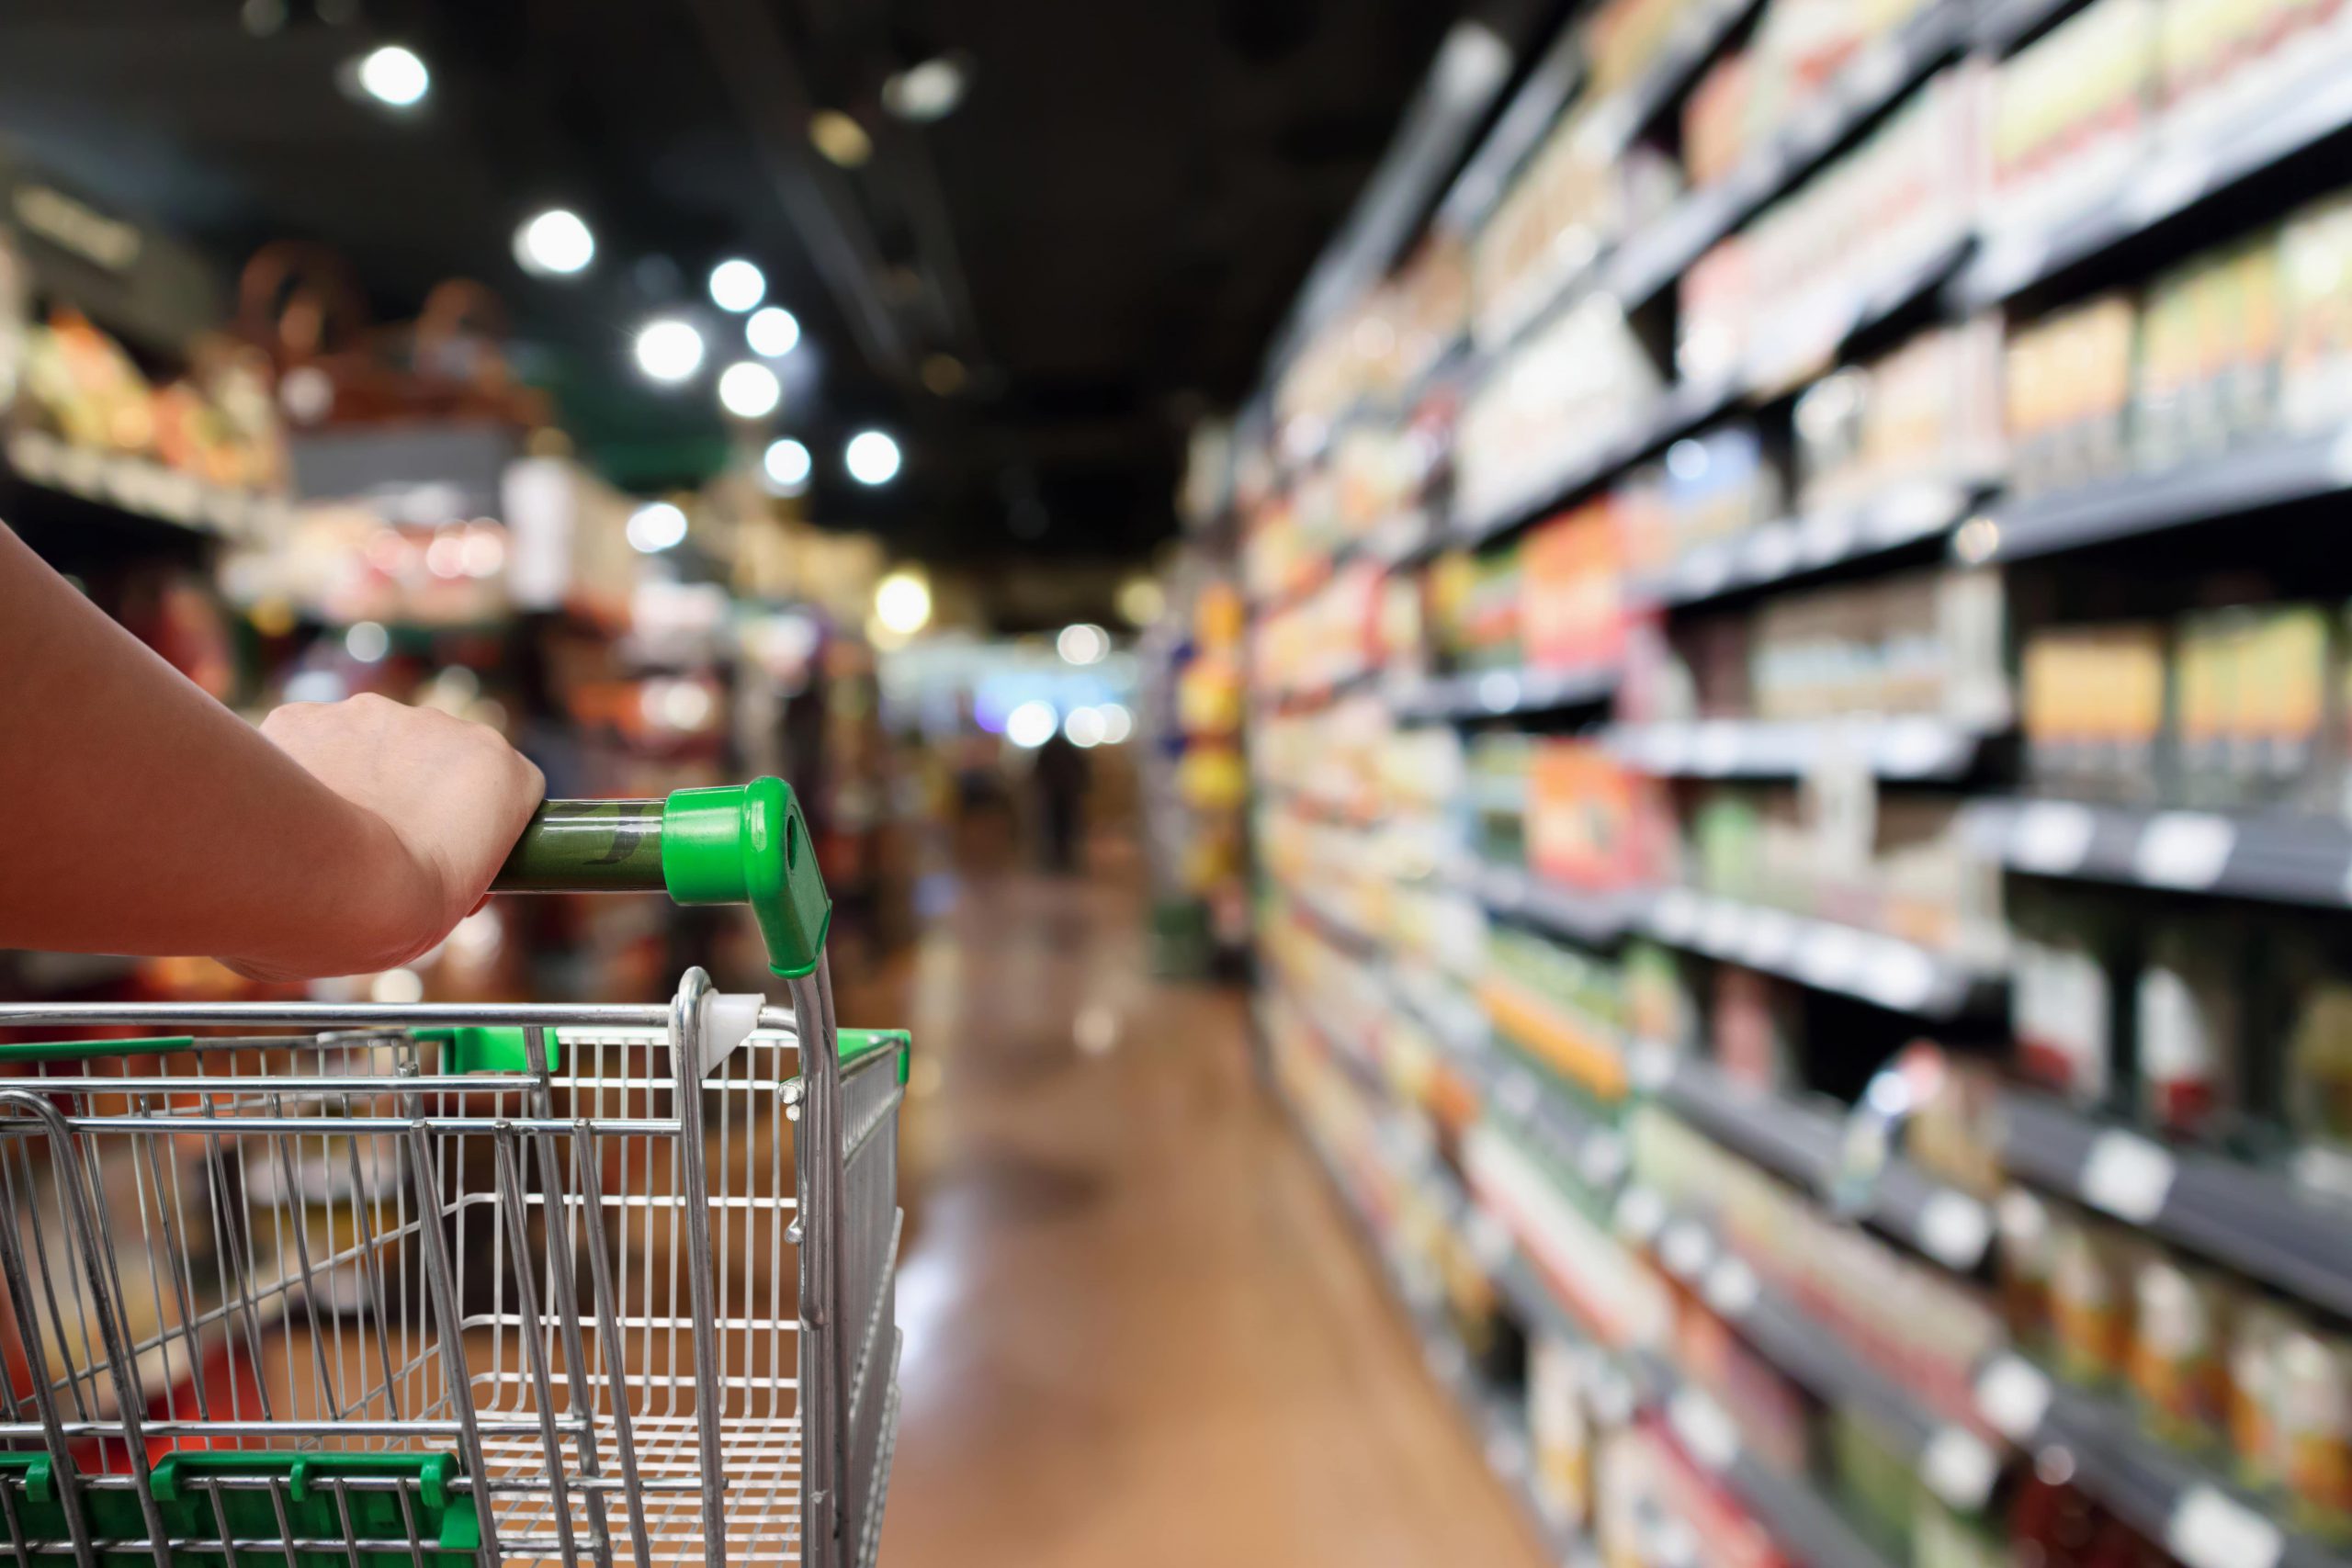 スーパーで買っておくべきおすすめの非常食 選び方のポイントとローリングストックについて 防災コラム